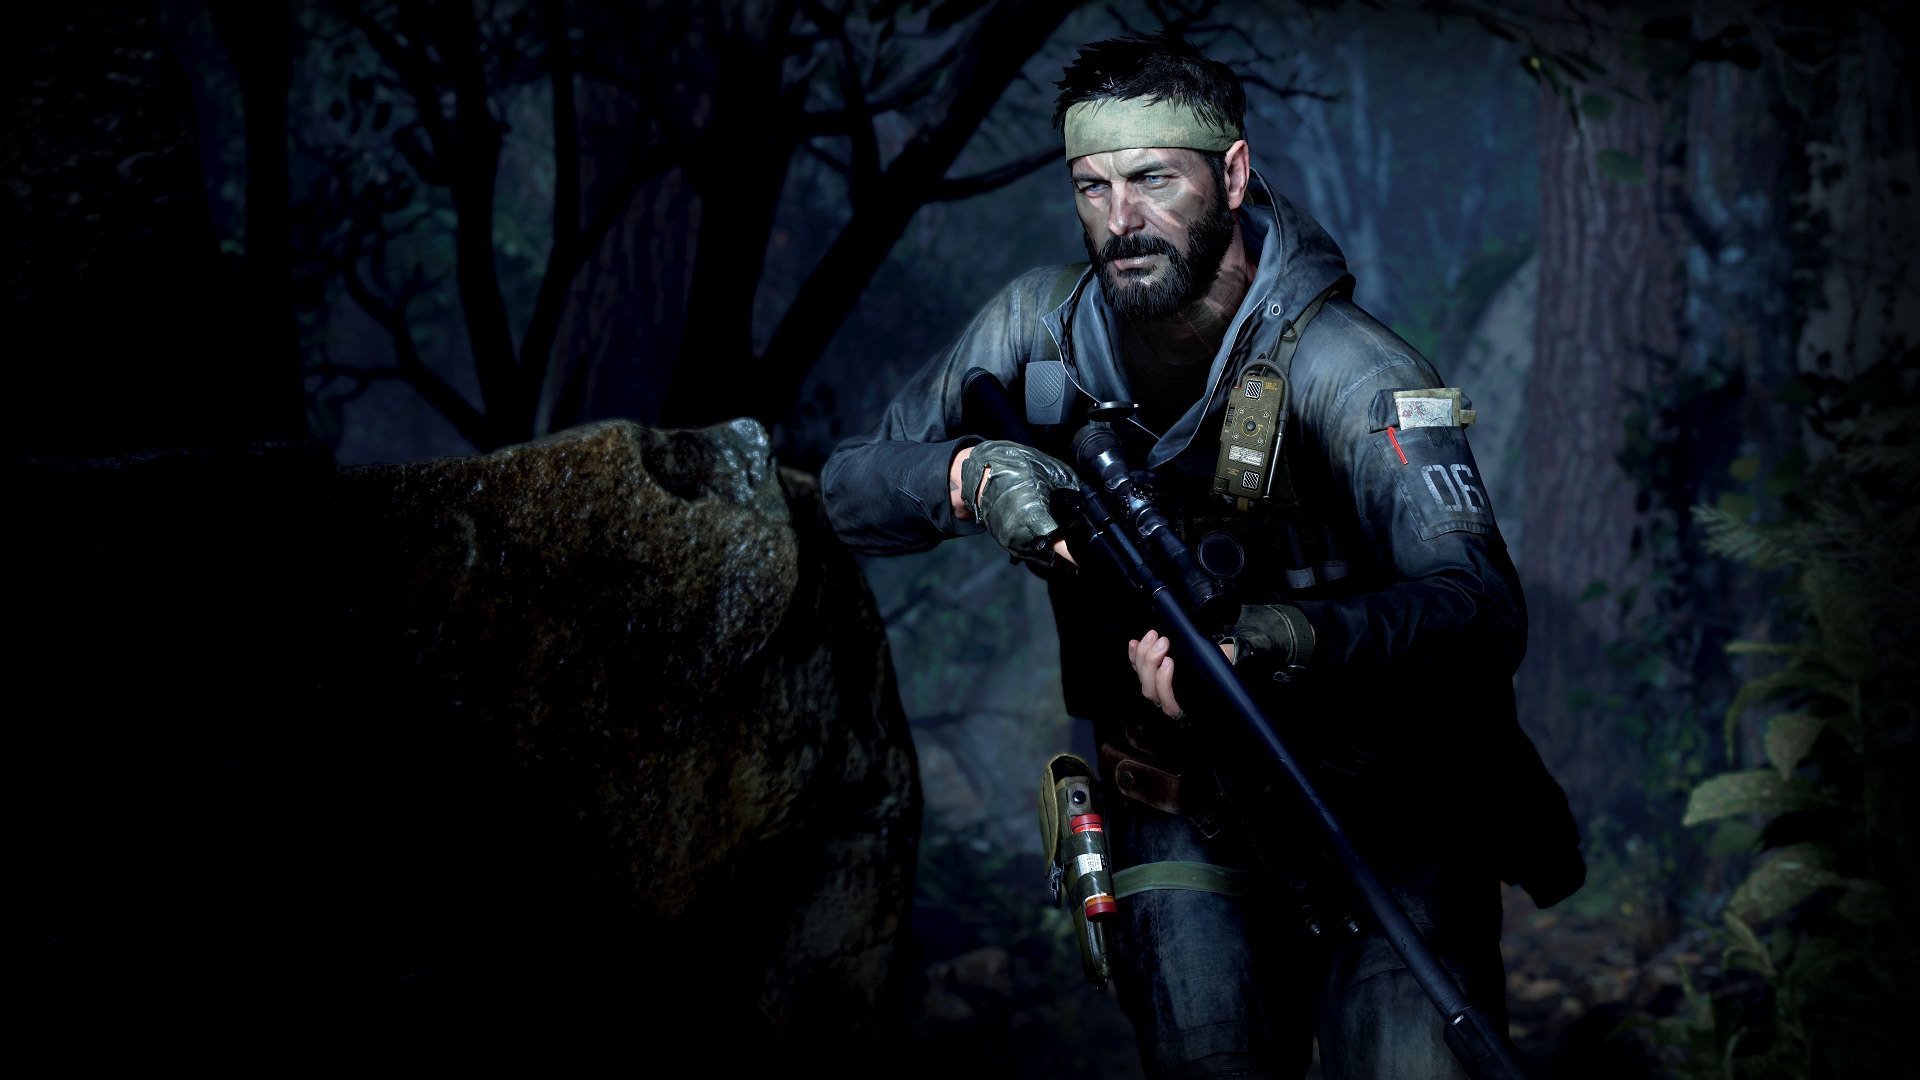 خرید بازی Call of Duty: Black Ops Cold War - کالاف دیوتی بلک آپس کلد وار پلی استیشن PS4 , PS5 با قیمت مناسب همراه نقد و بررسی